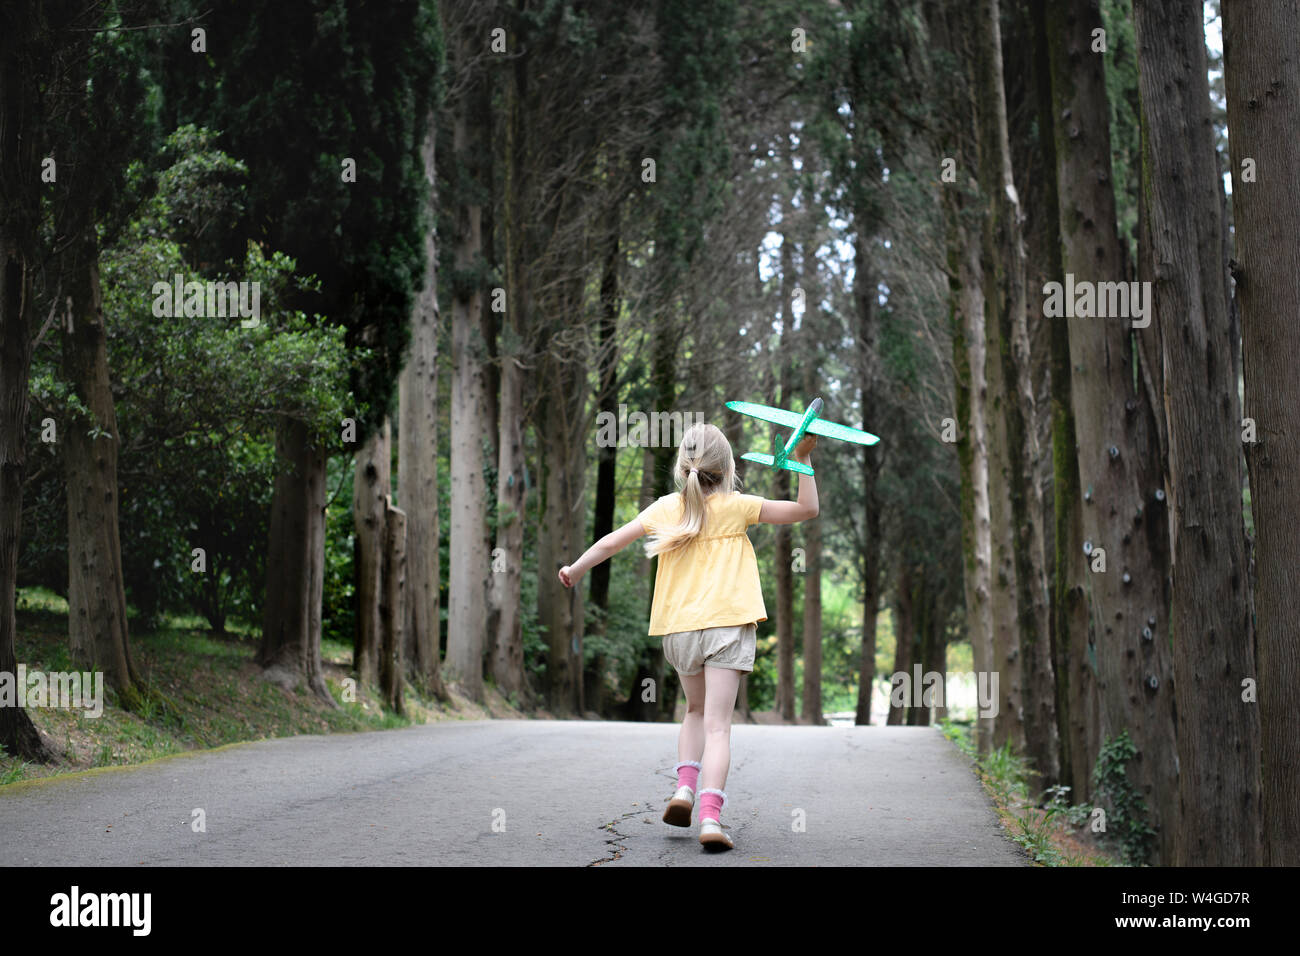 Mädchen mit Flugzeug, auf einer kleinen, mit Bäumen gesäumten Straße Stockfoto